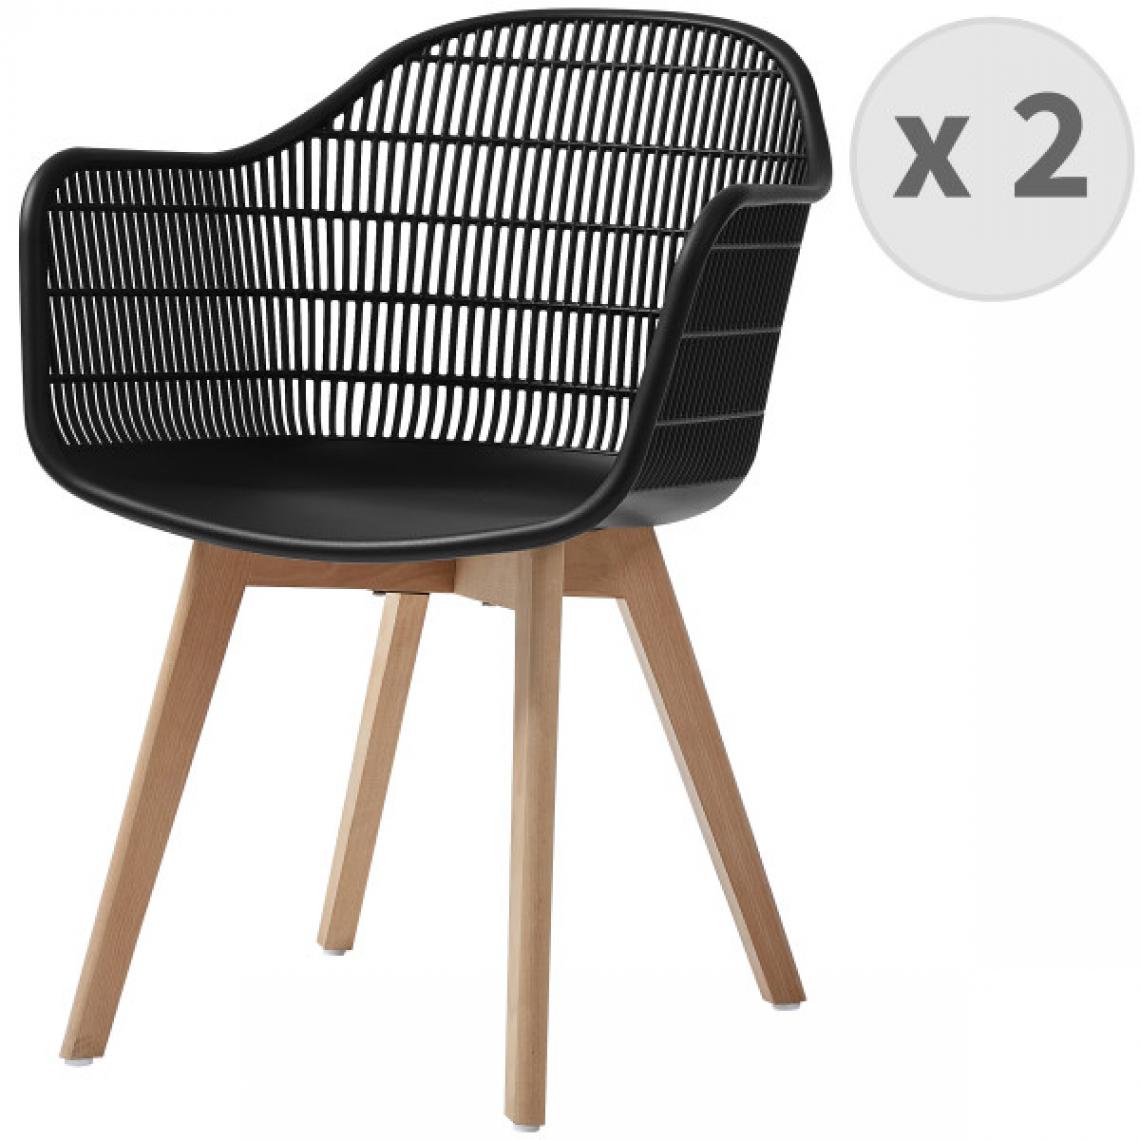 Moloo - MERIDA-Chaise scandinave noir pieds hêtre (x2) - Chaises